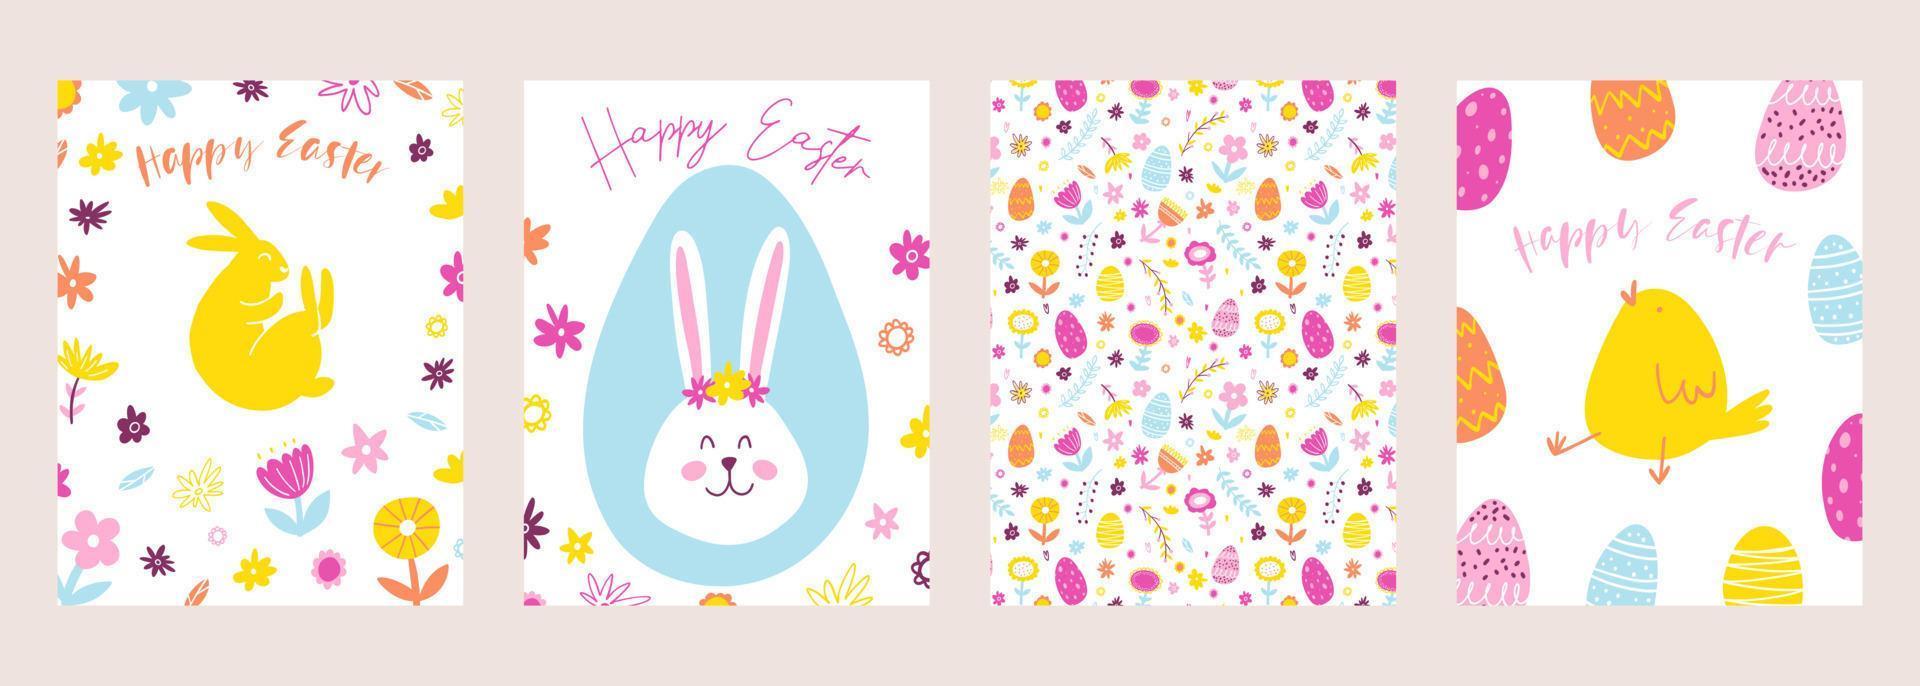 einstellen von glücklich Ostern Gruß Karten. Hand gezeichnet bunt Pflanzen, Hase, Huhn, Eier im modern minimalistisch Stil vektor